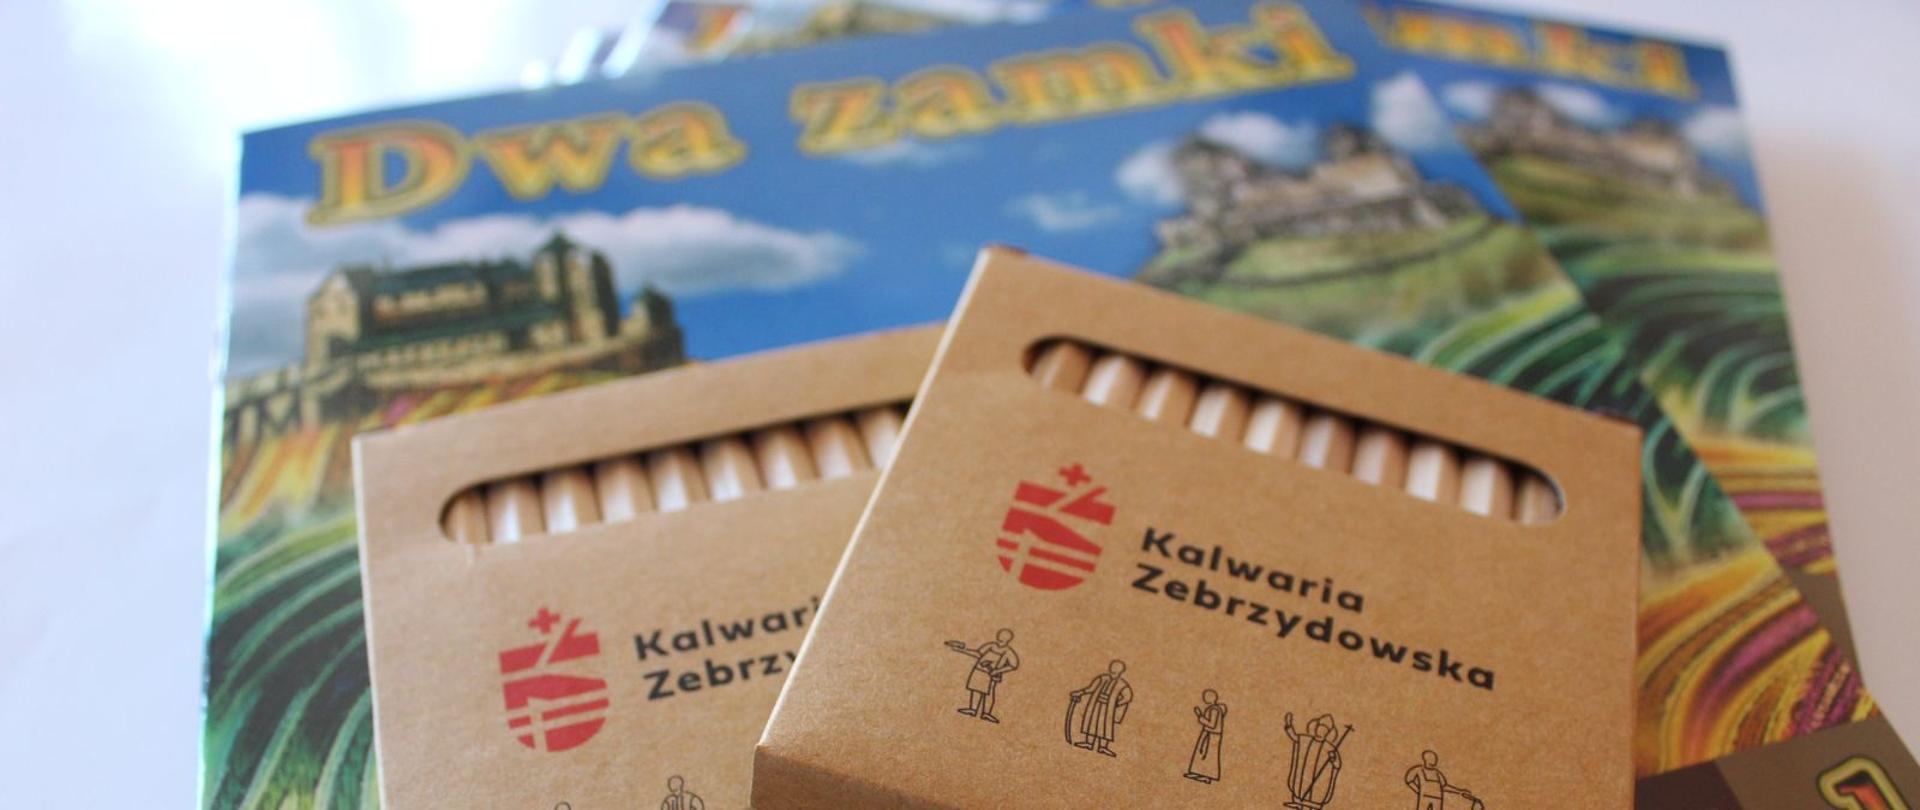 Na pierwszym planie opakowanie kredek z logotypem Kalwarii Zebrzydowskiej, w tle kolorowanka "Dwa zamki"